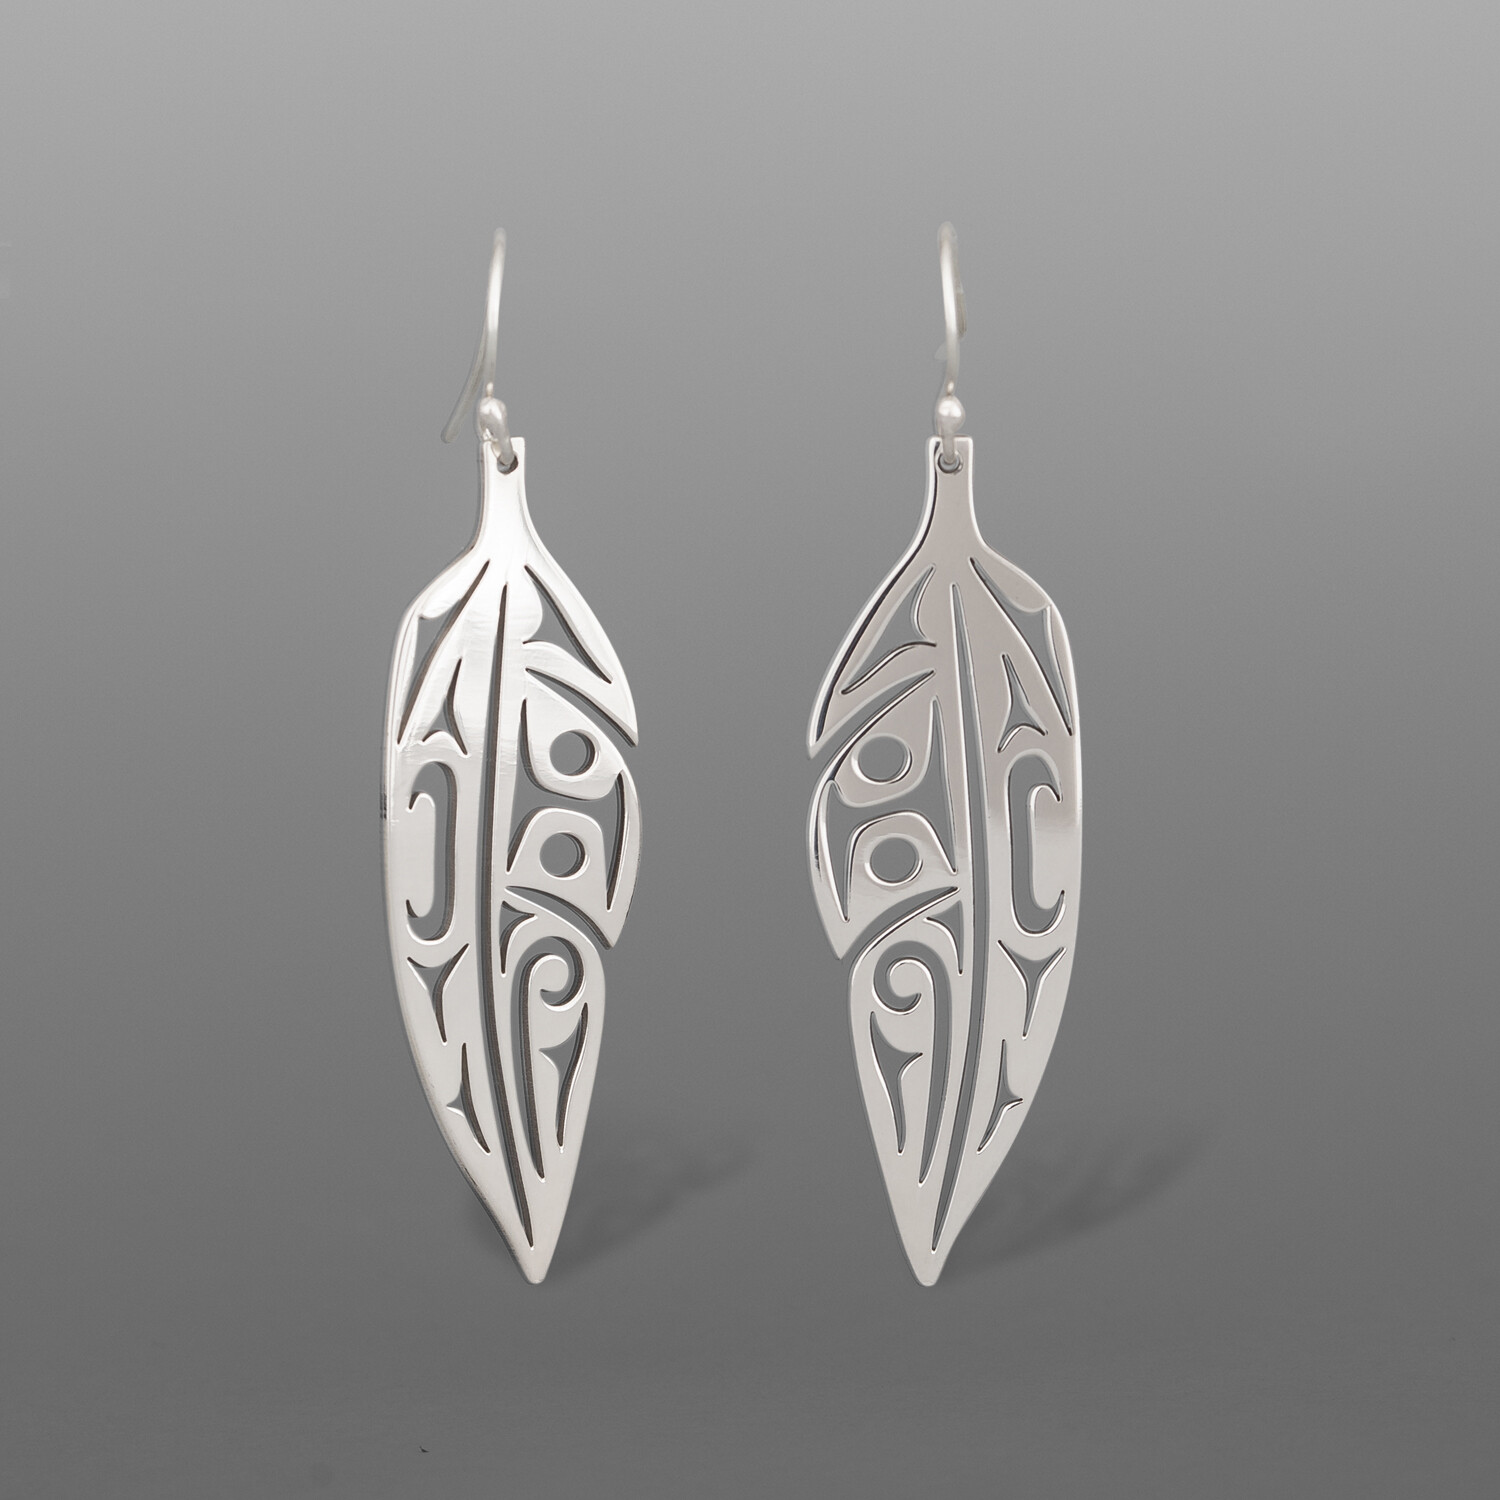 Eagle Feather Earrings
Louann Neel
Kwakwaka'wakw
Silver
1¾” x ½”
$175